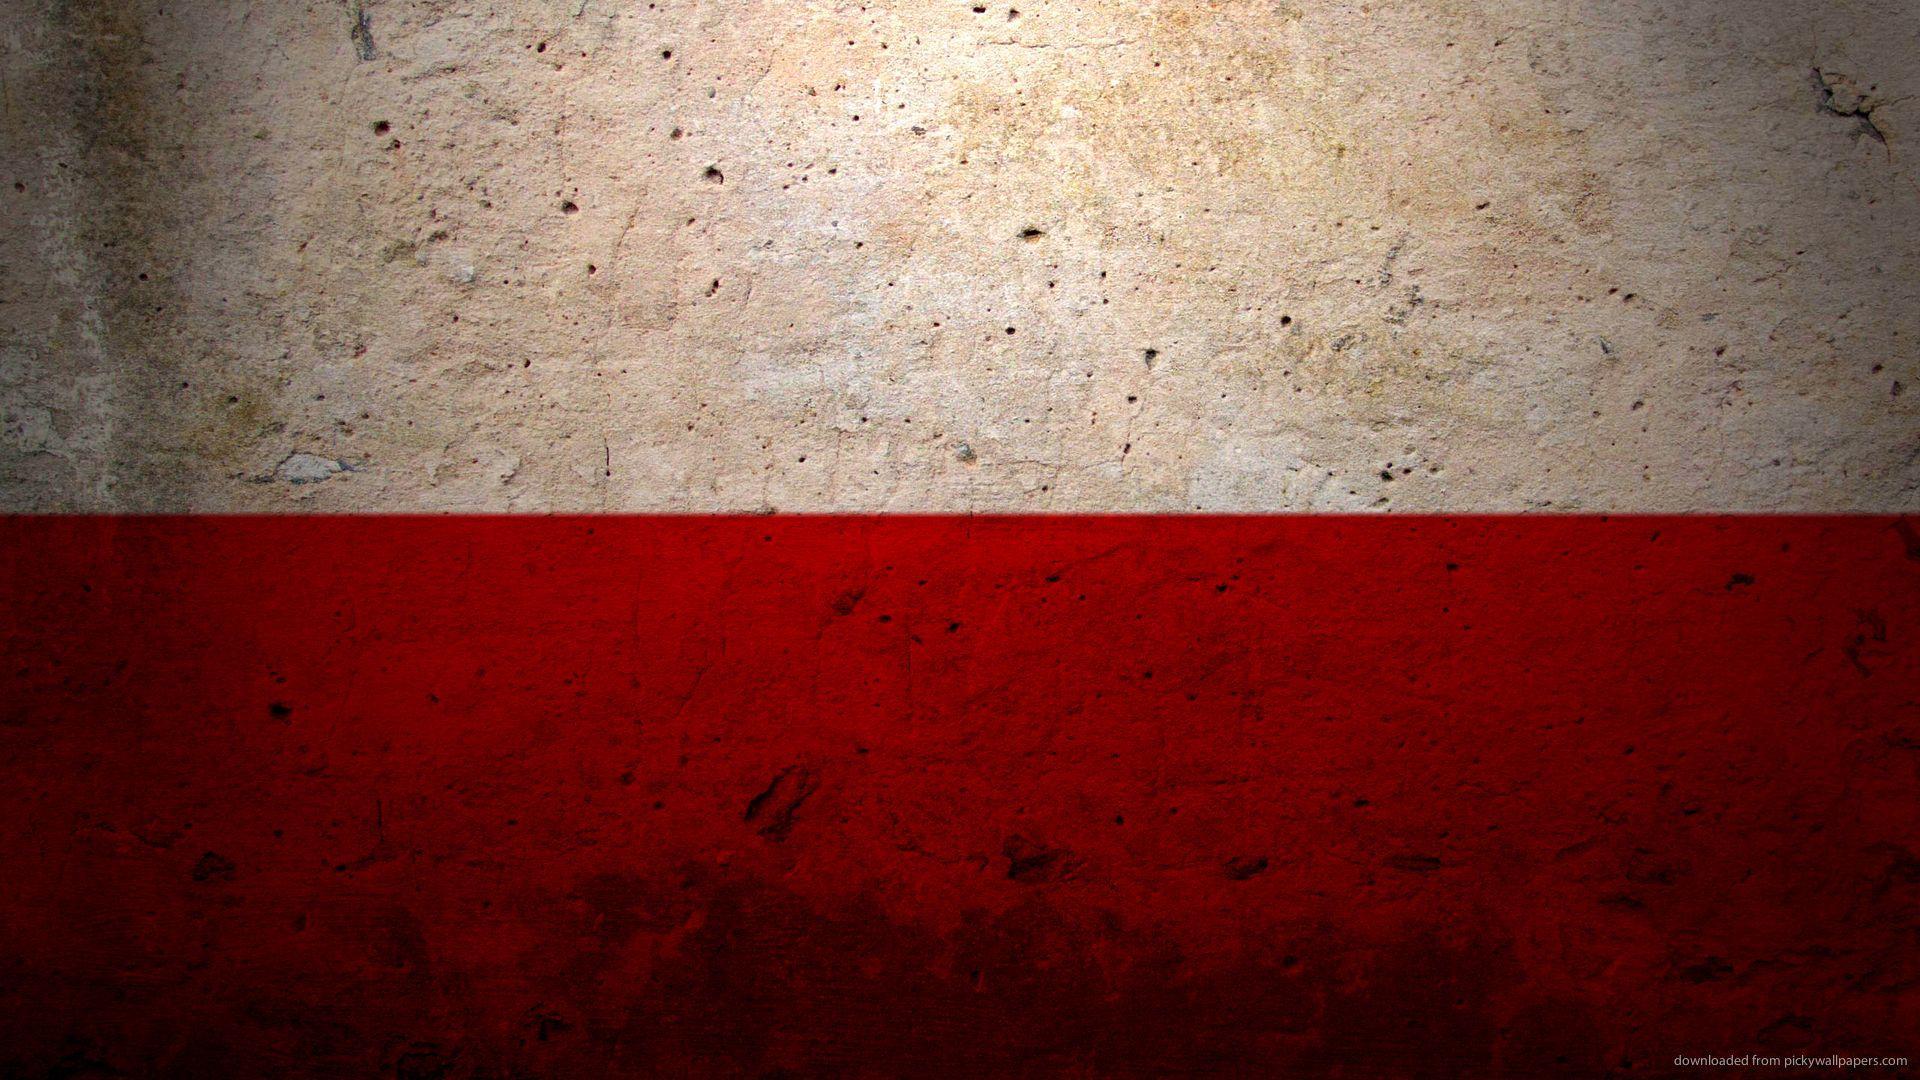 HD Poland Flag Wallpaper